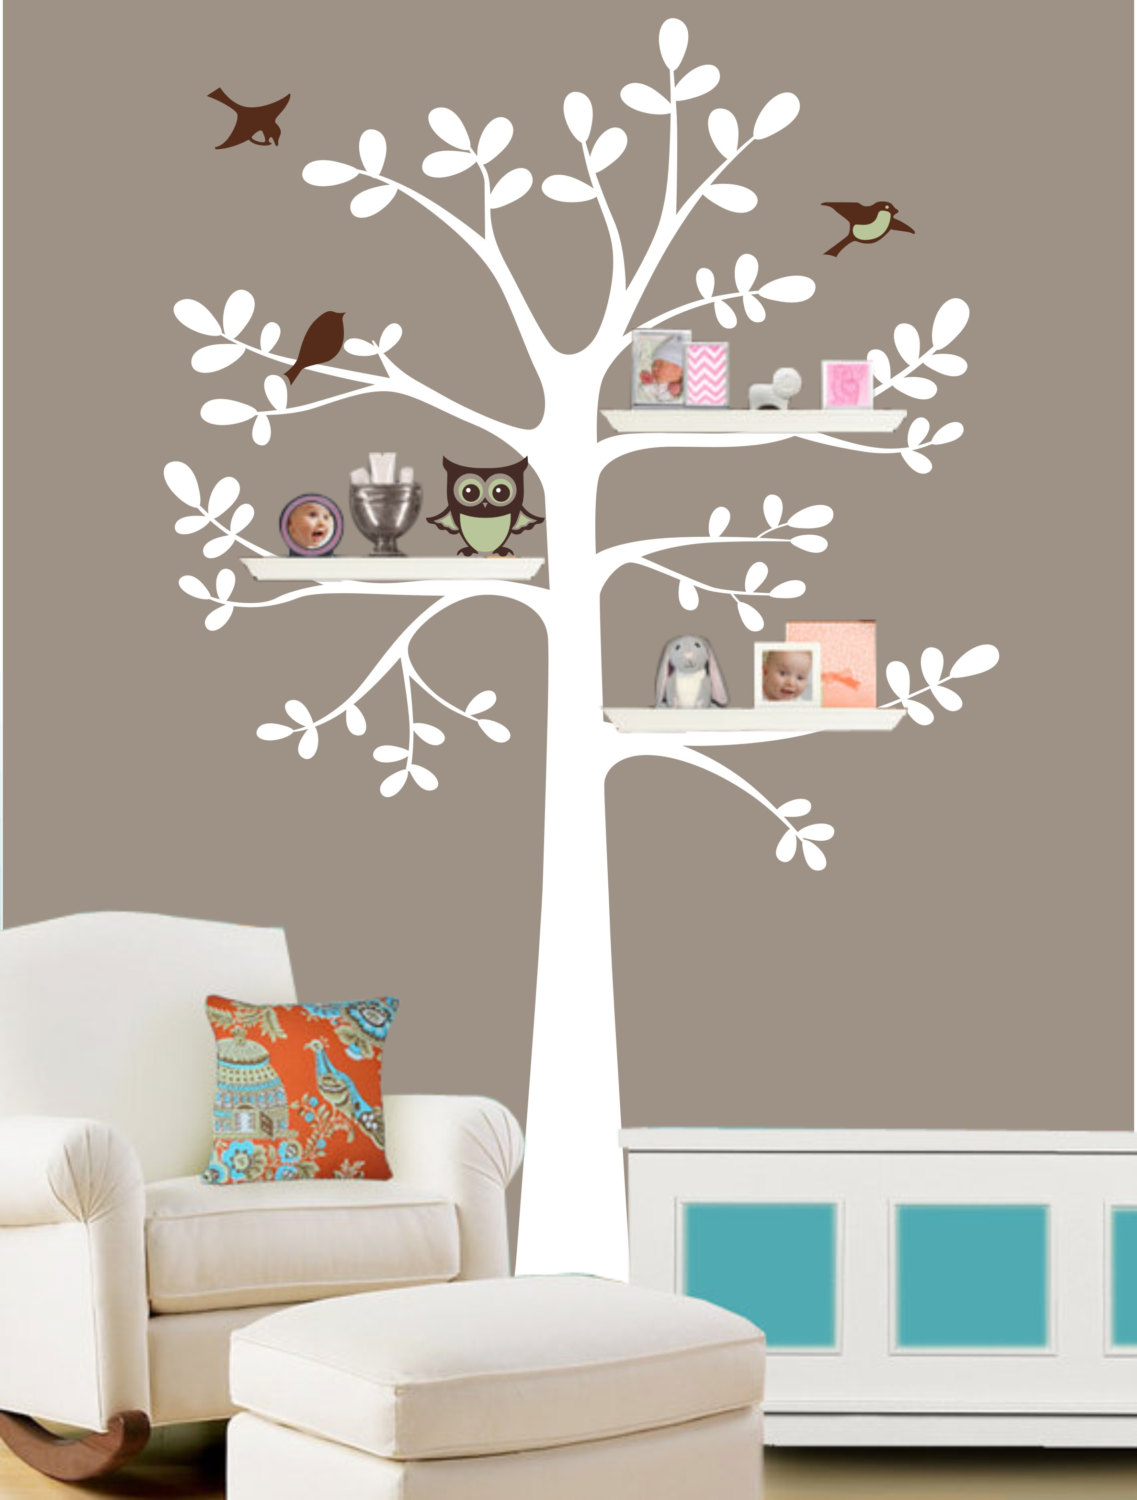 Family Tree Wall Decal - Shelf Tree Decal - Tree Decal With Owl - Owl Nursery Theme - Shelf Organizer Decal - Tree Bookshelf - Owls R848